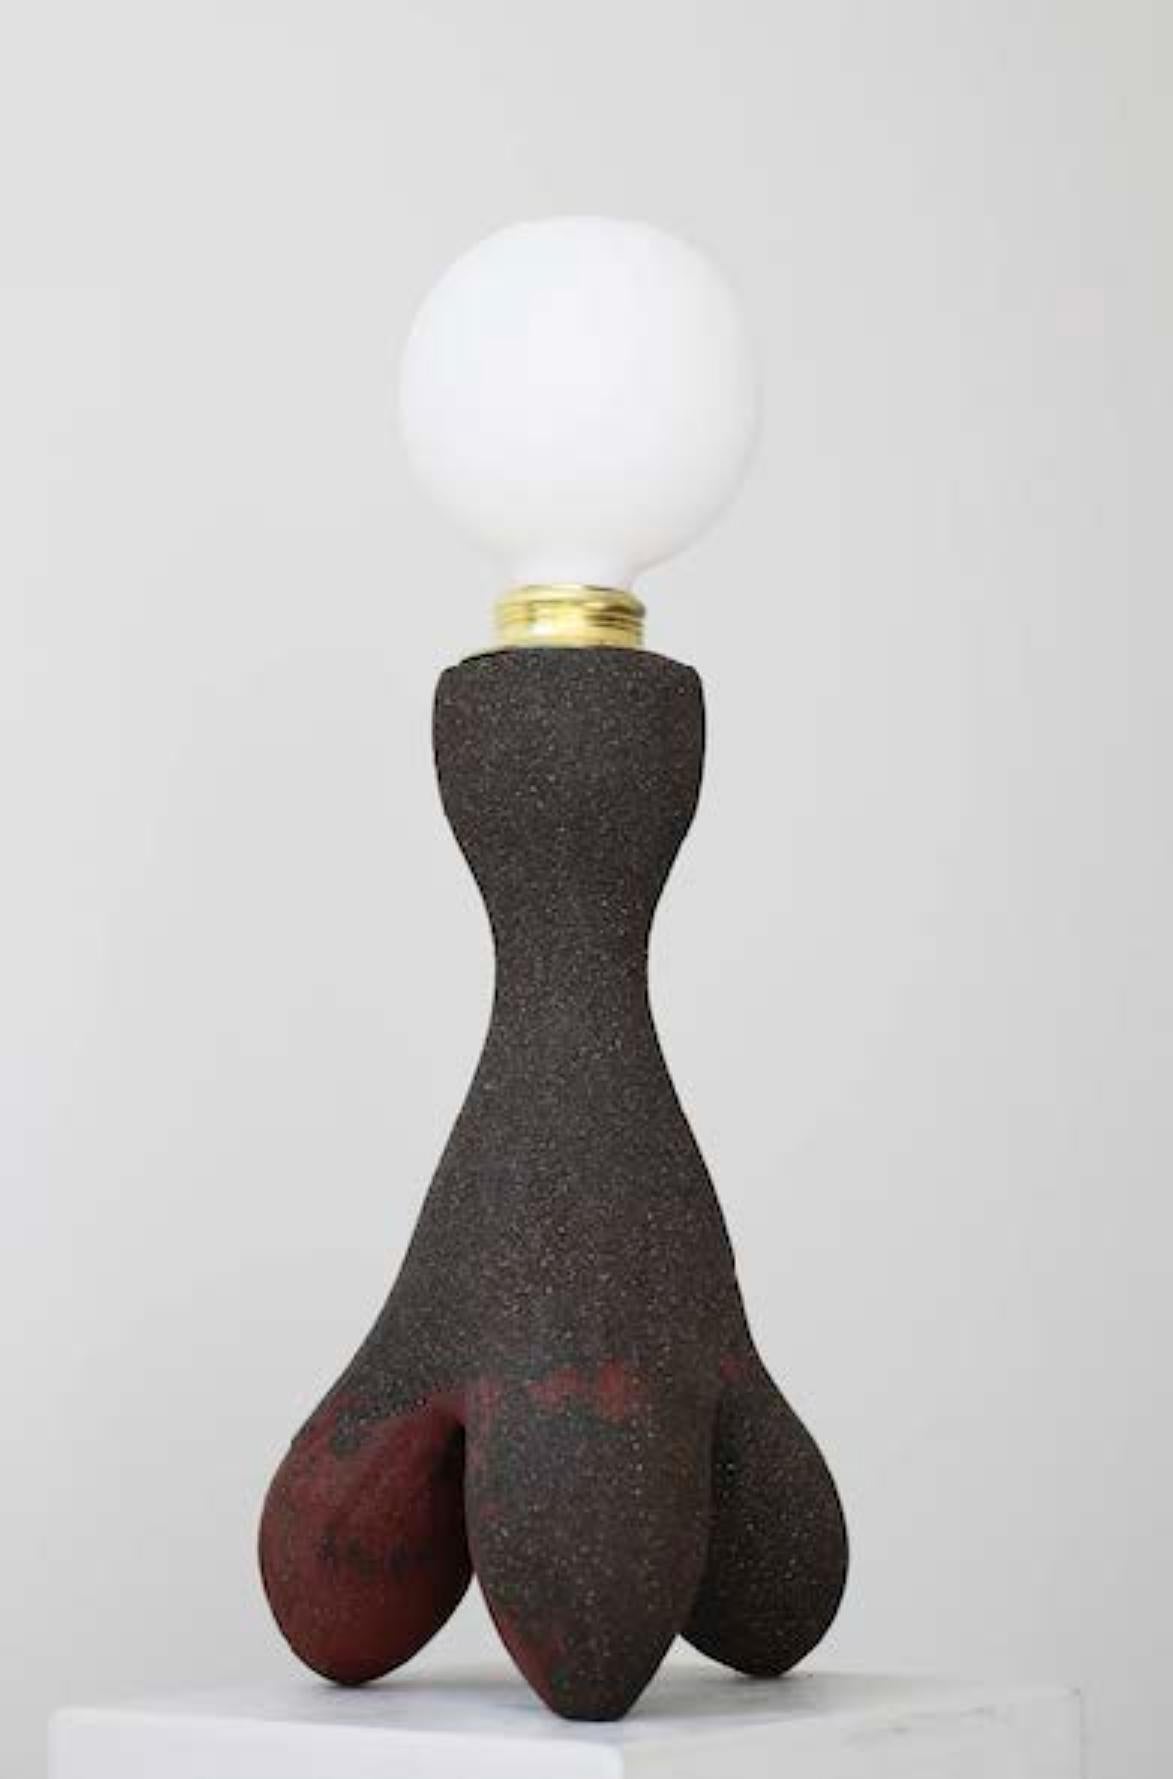 Podo-Lampe von Abid Javed
Abmessungen: T 15 x H 50 cm (Maße sind variabel)
MATERIALIEN: Keramik 
Erhältlich in verschiedenen Tonmassen und Größenoptionen.

Tischlampenfuß aus Keramik.
Handgefertigter Steingut-Keramik-Lampensockel. Gewundene Hohlform